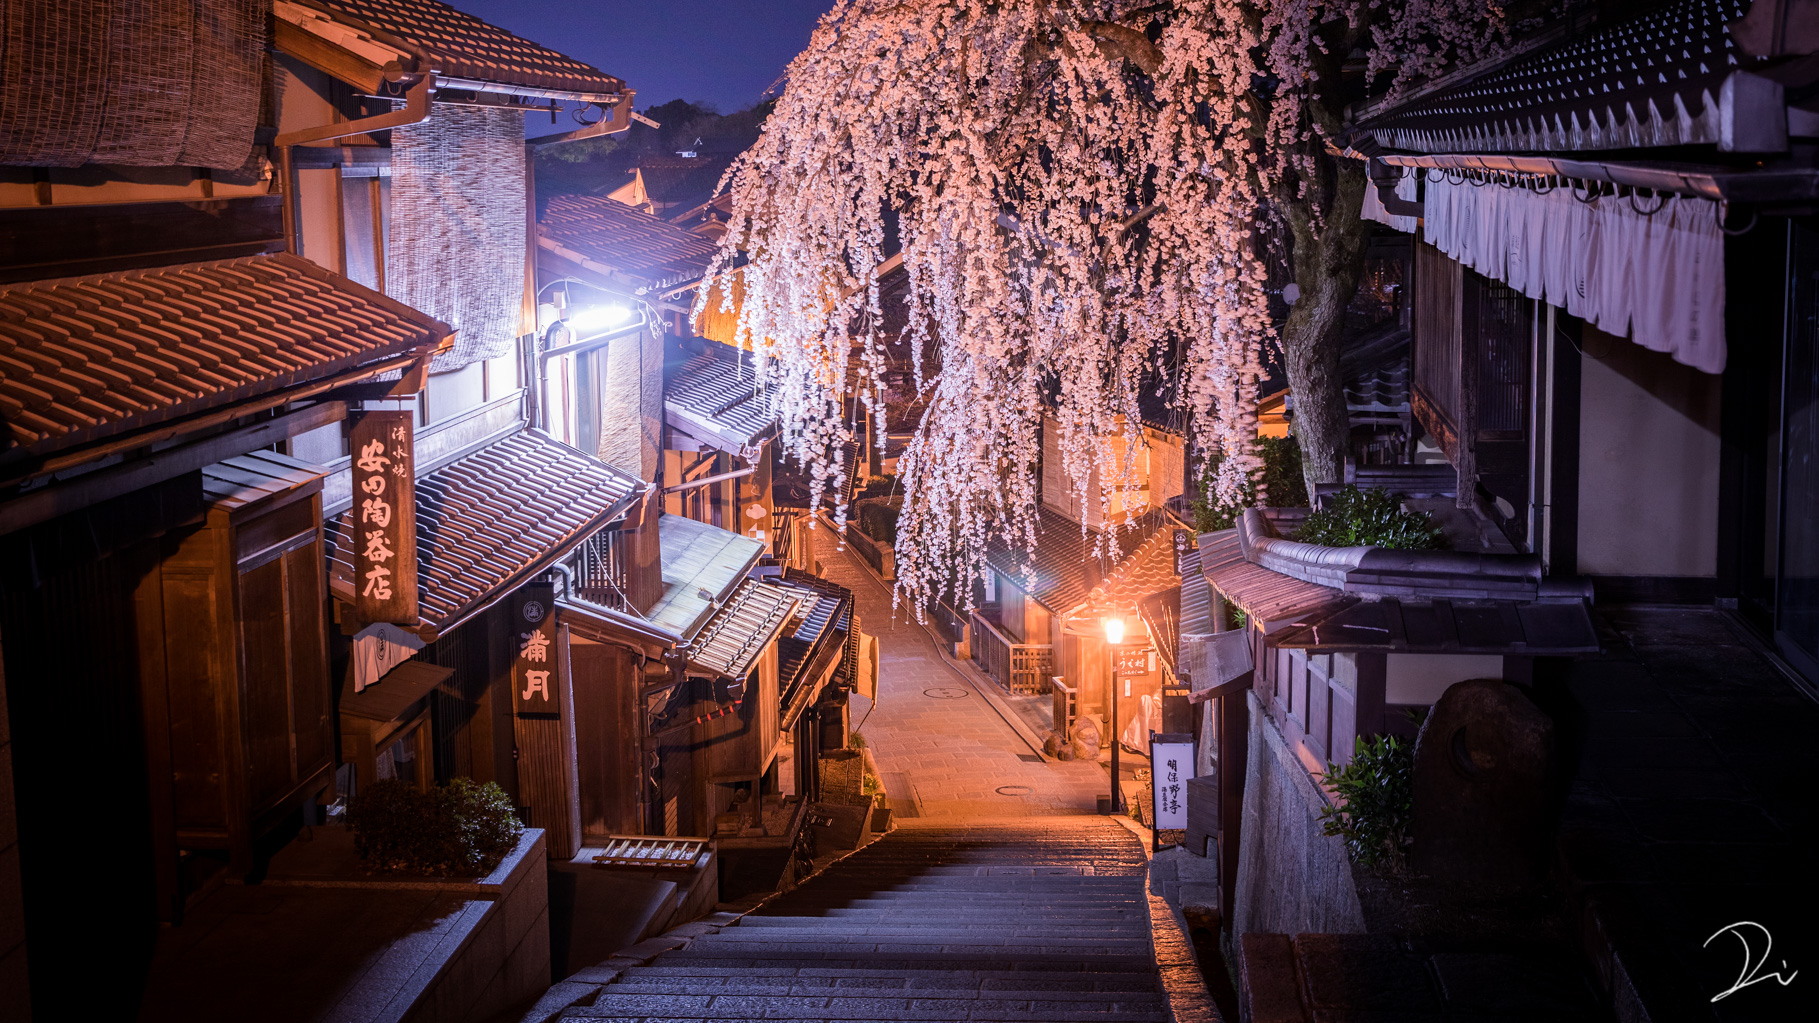 うさだだぬき 京都夜桜の幻想的な美しさ どうかスマホを横に向けて見て下さい スマホを横にして見ると幸せになれる これを見た人はピンク色の画像を貼れ T Co Txjg5rn3im Twitter